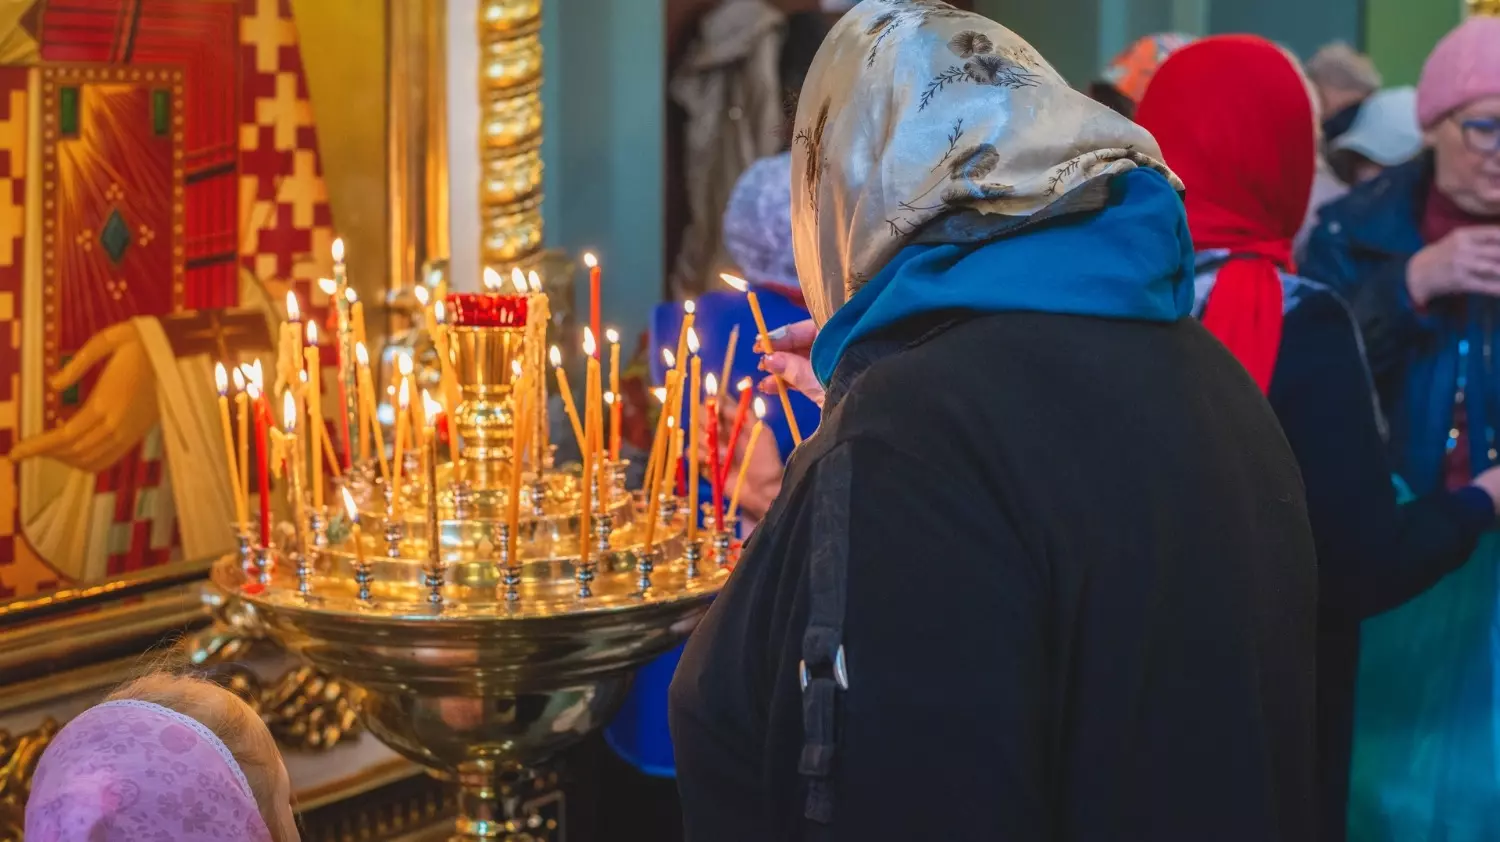 Вербное воскресенье православные проводят в молитве. В этот день лучше отказаться от домашних дел, также запрещается ссориться и ругаться.